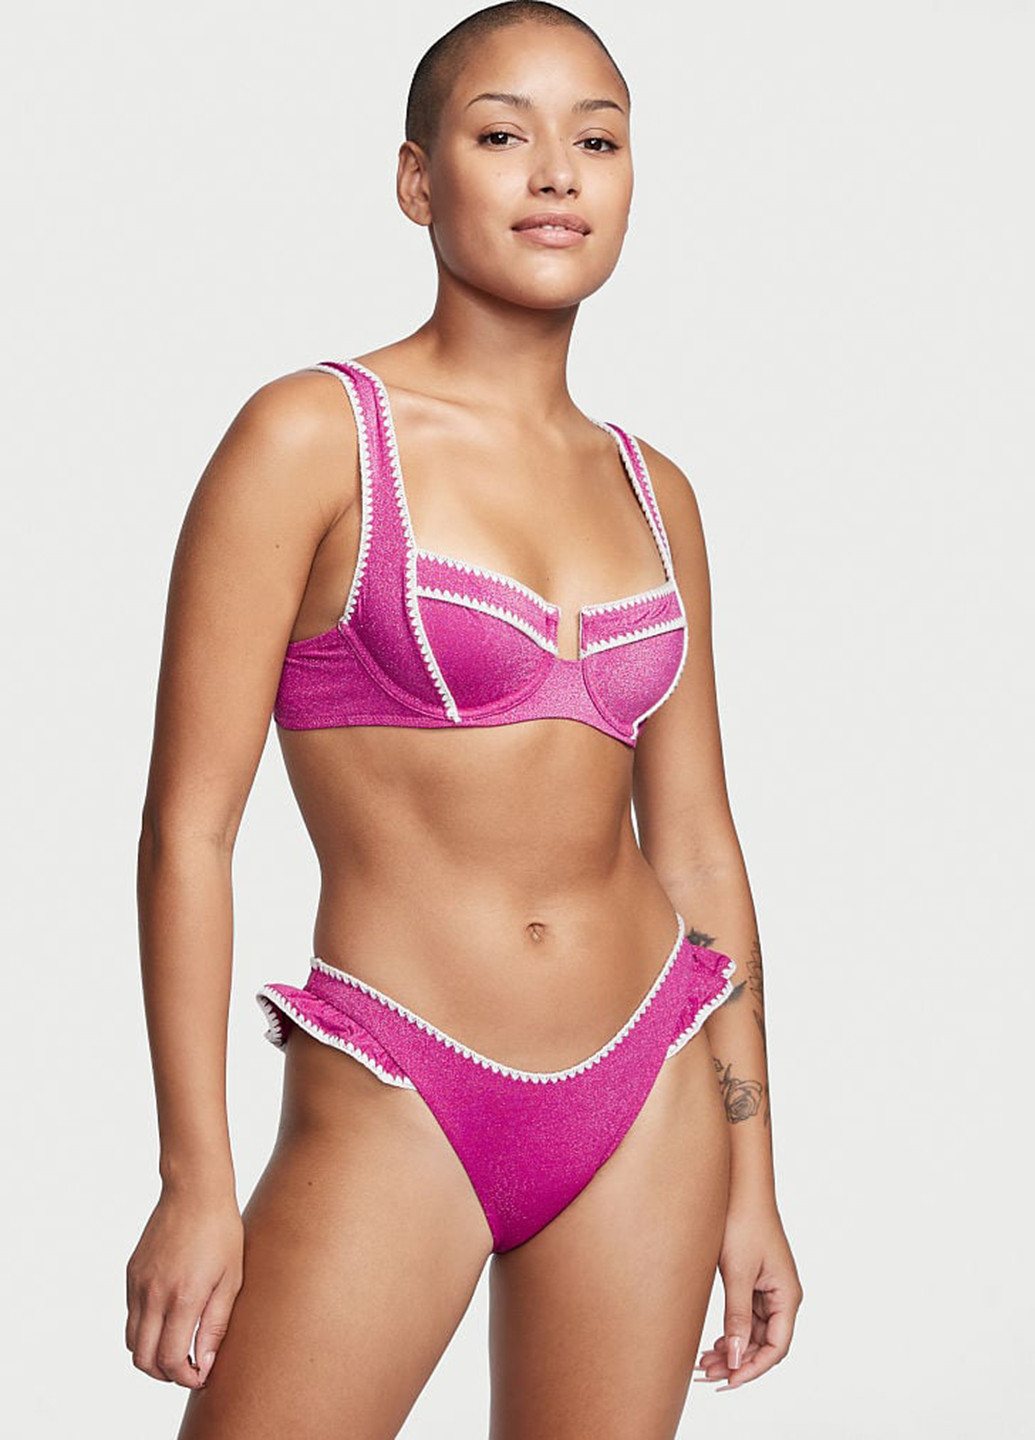 Фіолетовий літній купальник (ліф, трусики) роздільний Victoria's Secret